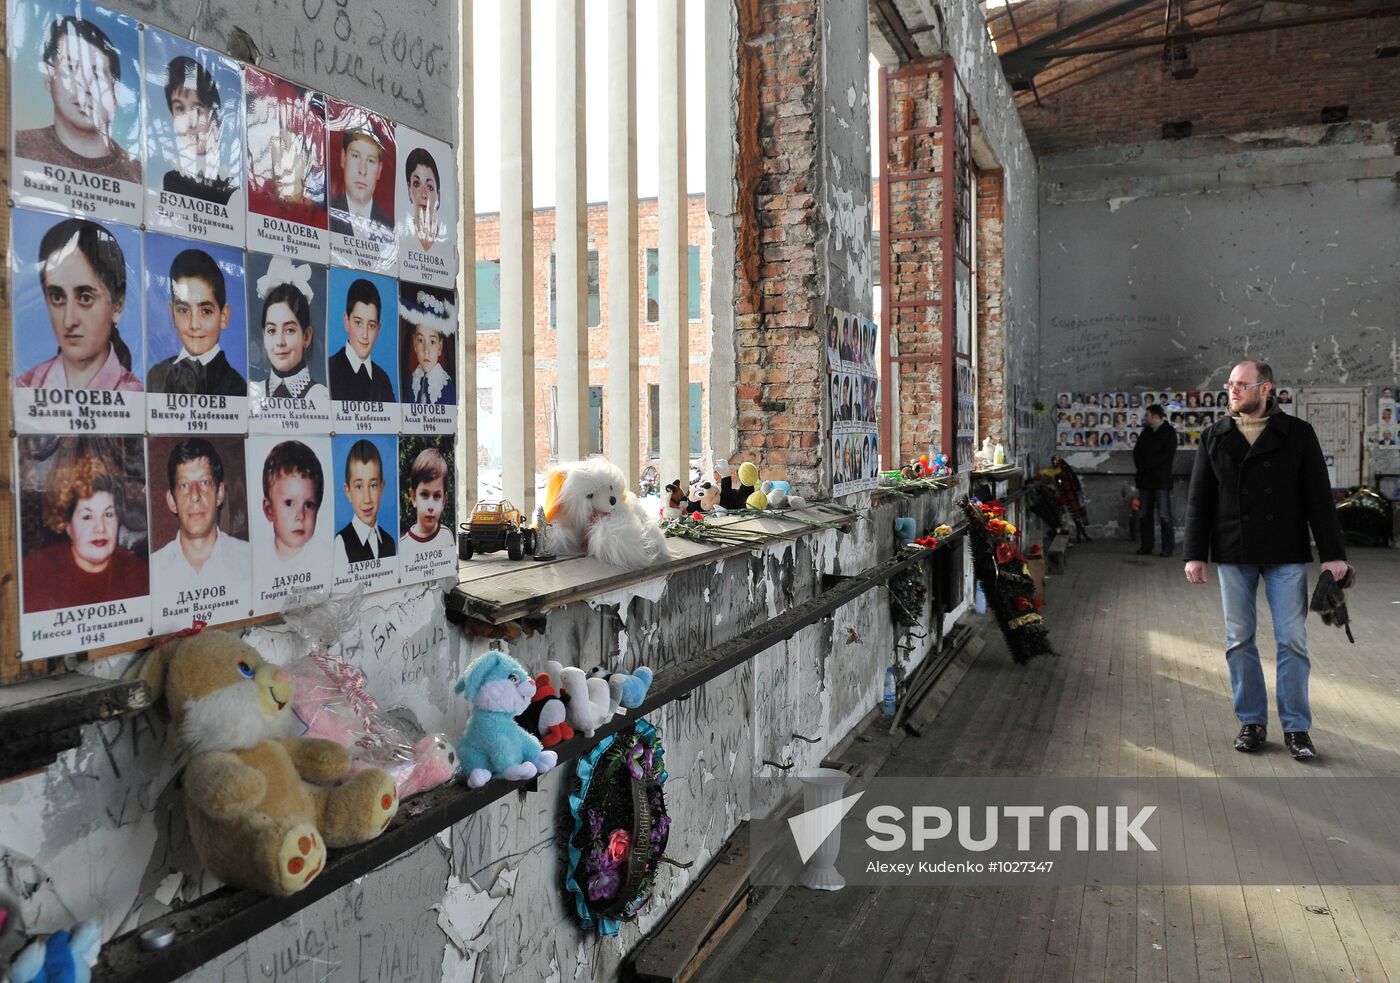 Beslan school №1 - memorial for victims of terrorist attack